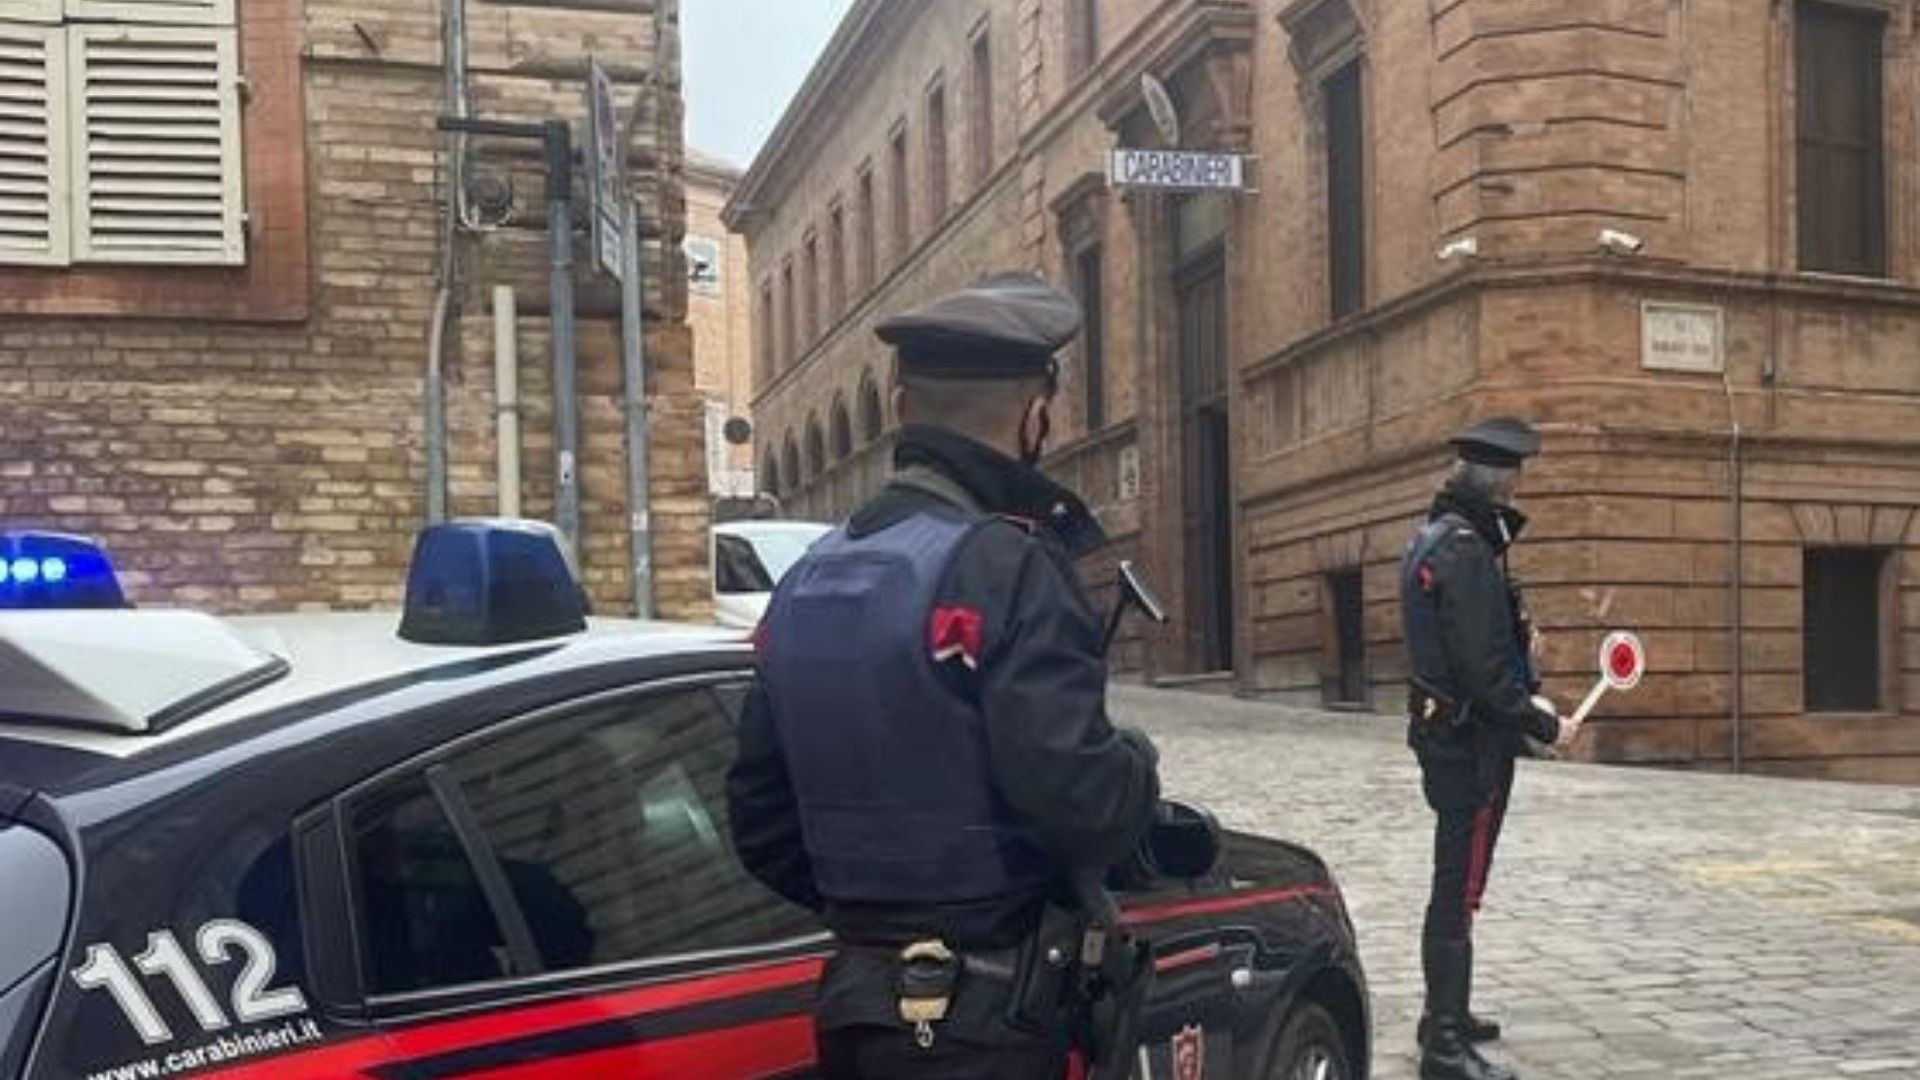 Accoltellato in centro a Macerata, passanti bloccano aggressore